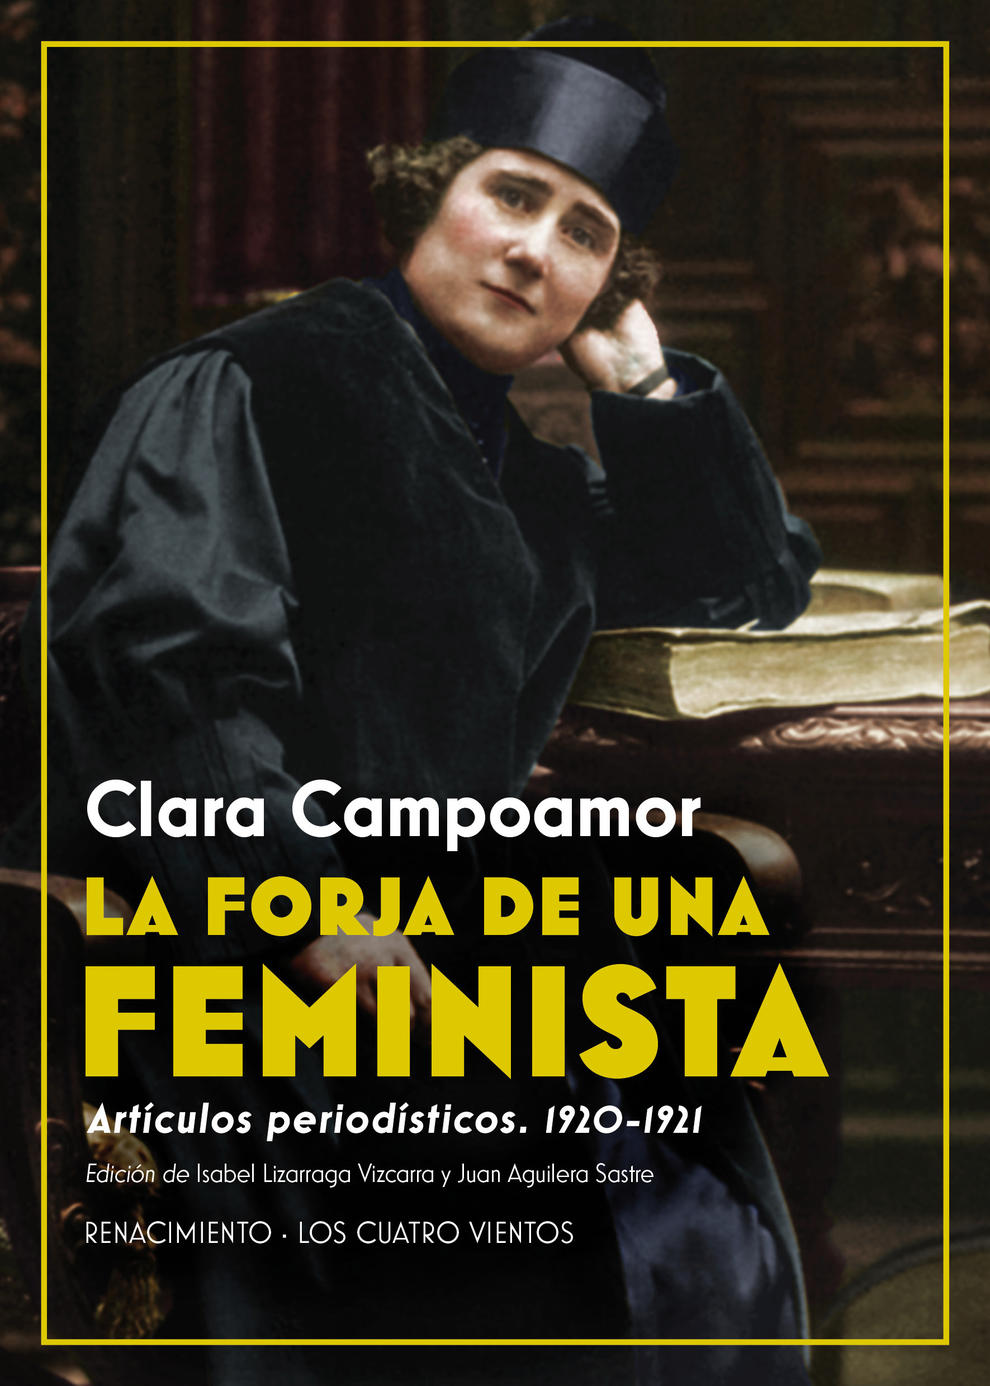 Clara Campoamor escribe